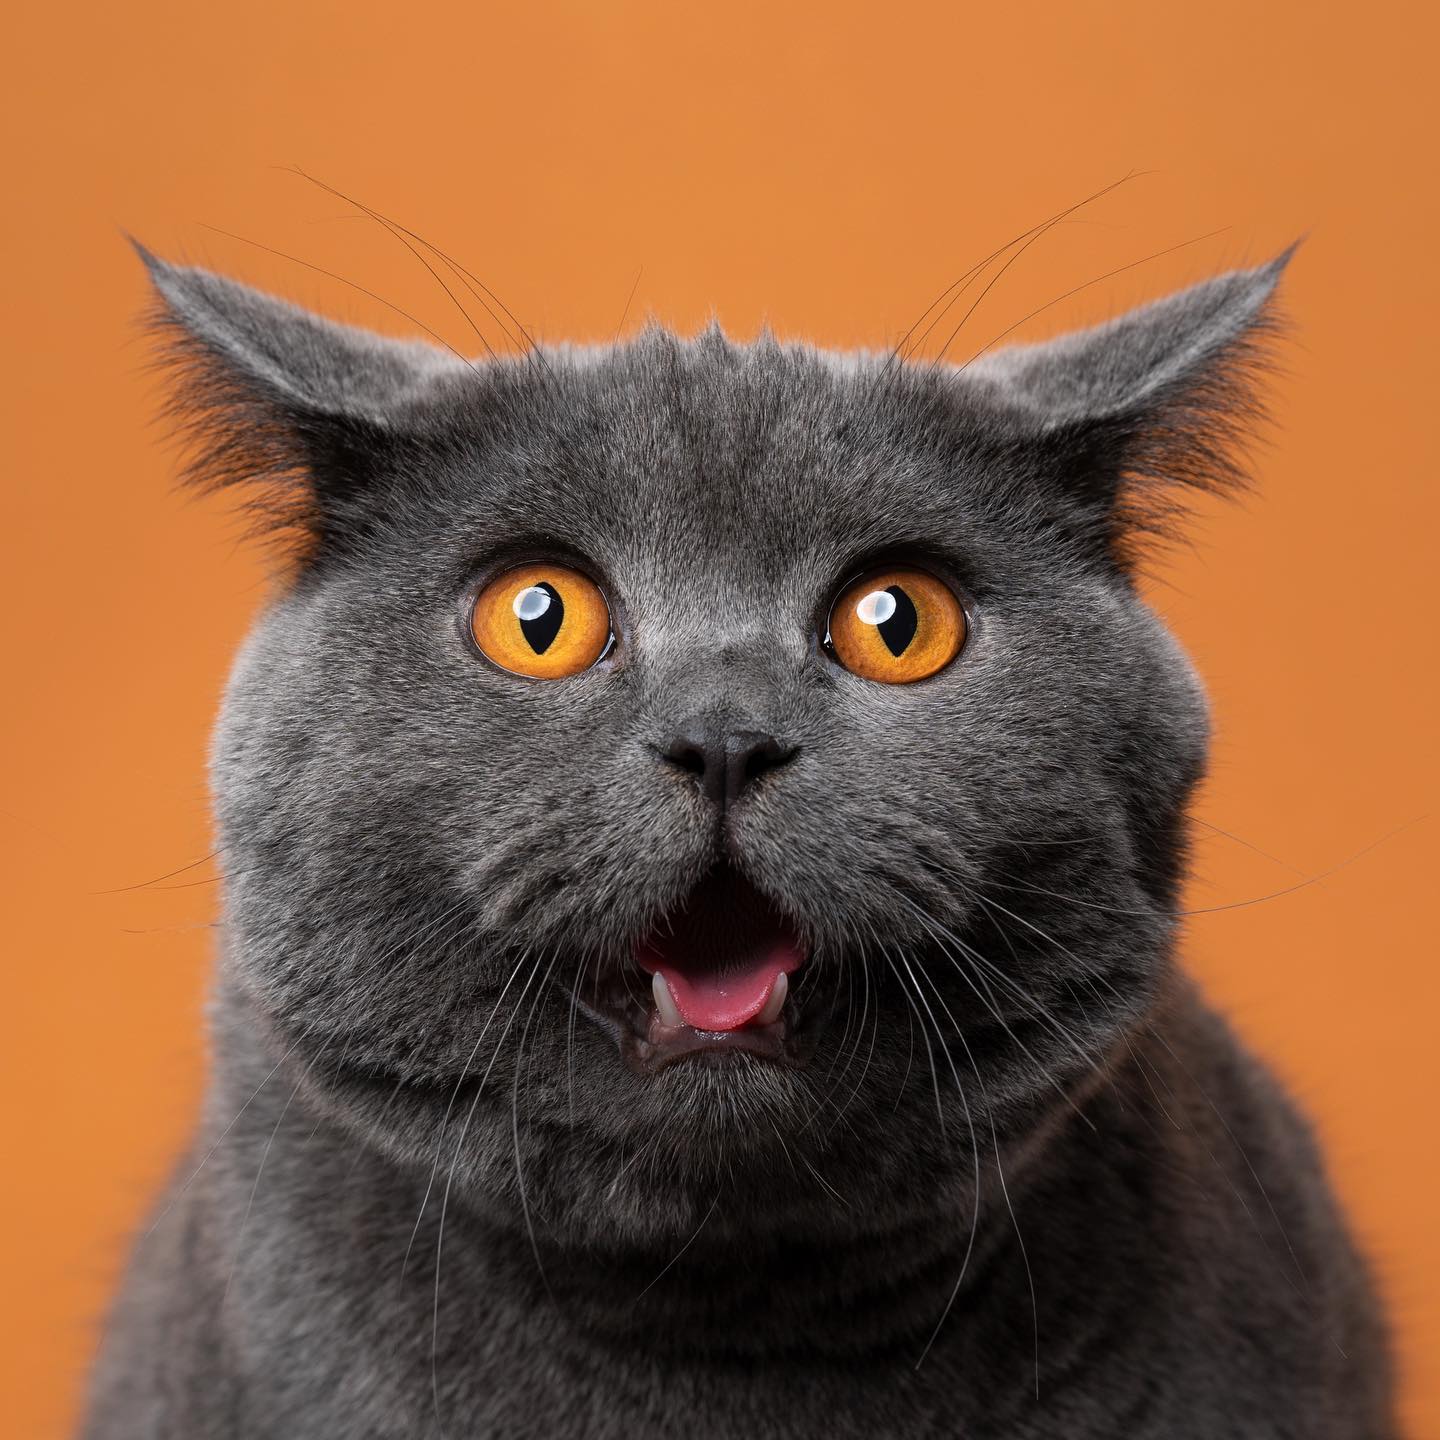 Ce “catographe” prend des photos drôles de chats qui pourraient te faire rire (50 photos).